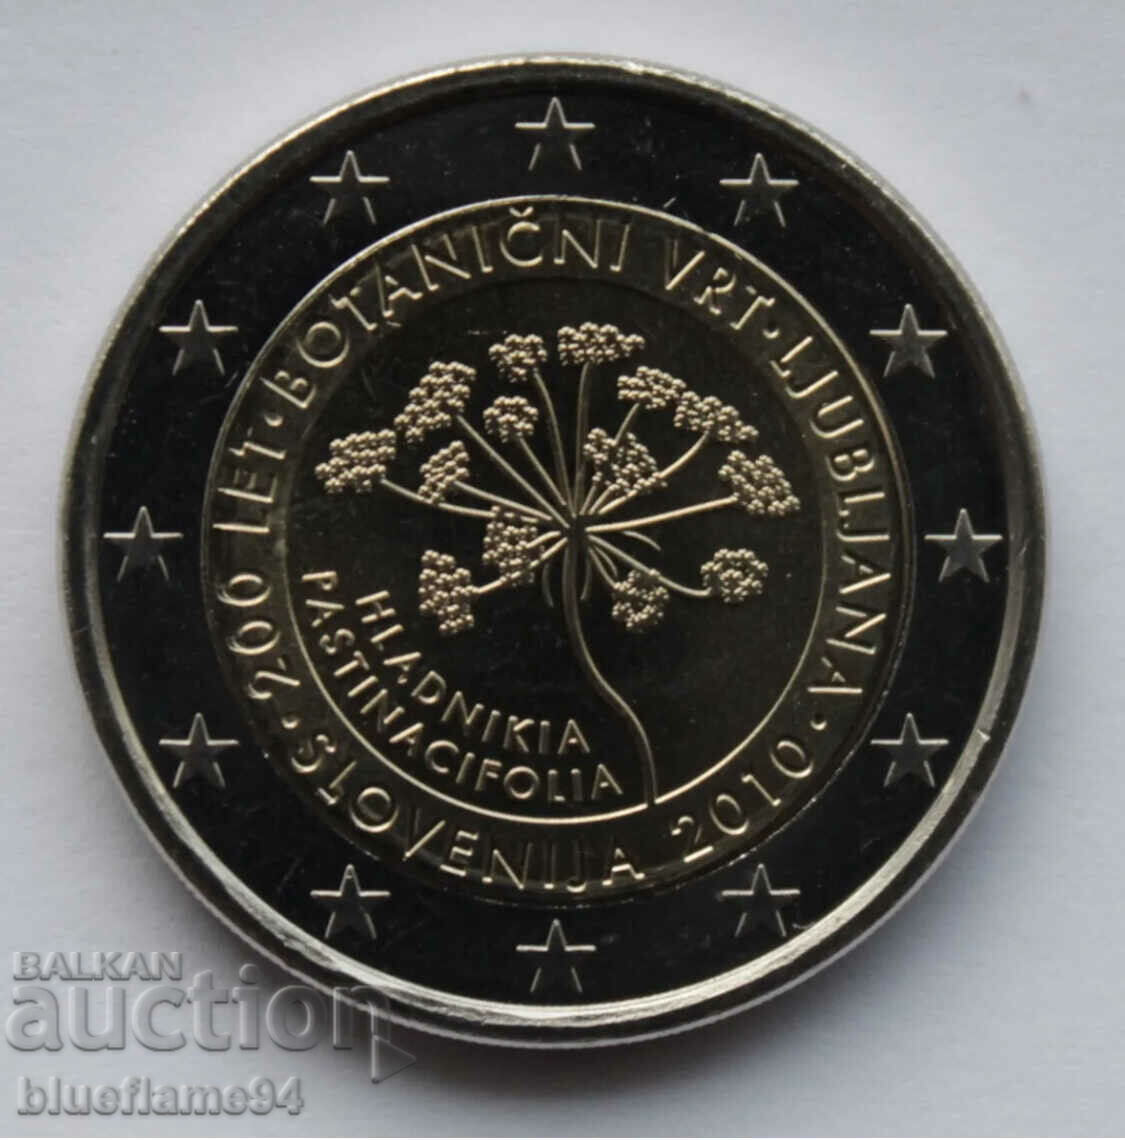 2 euro Slovenia 2010